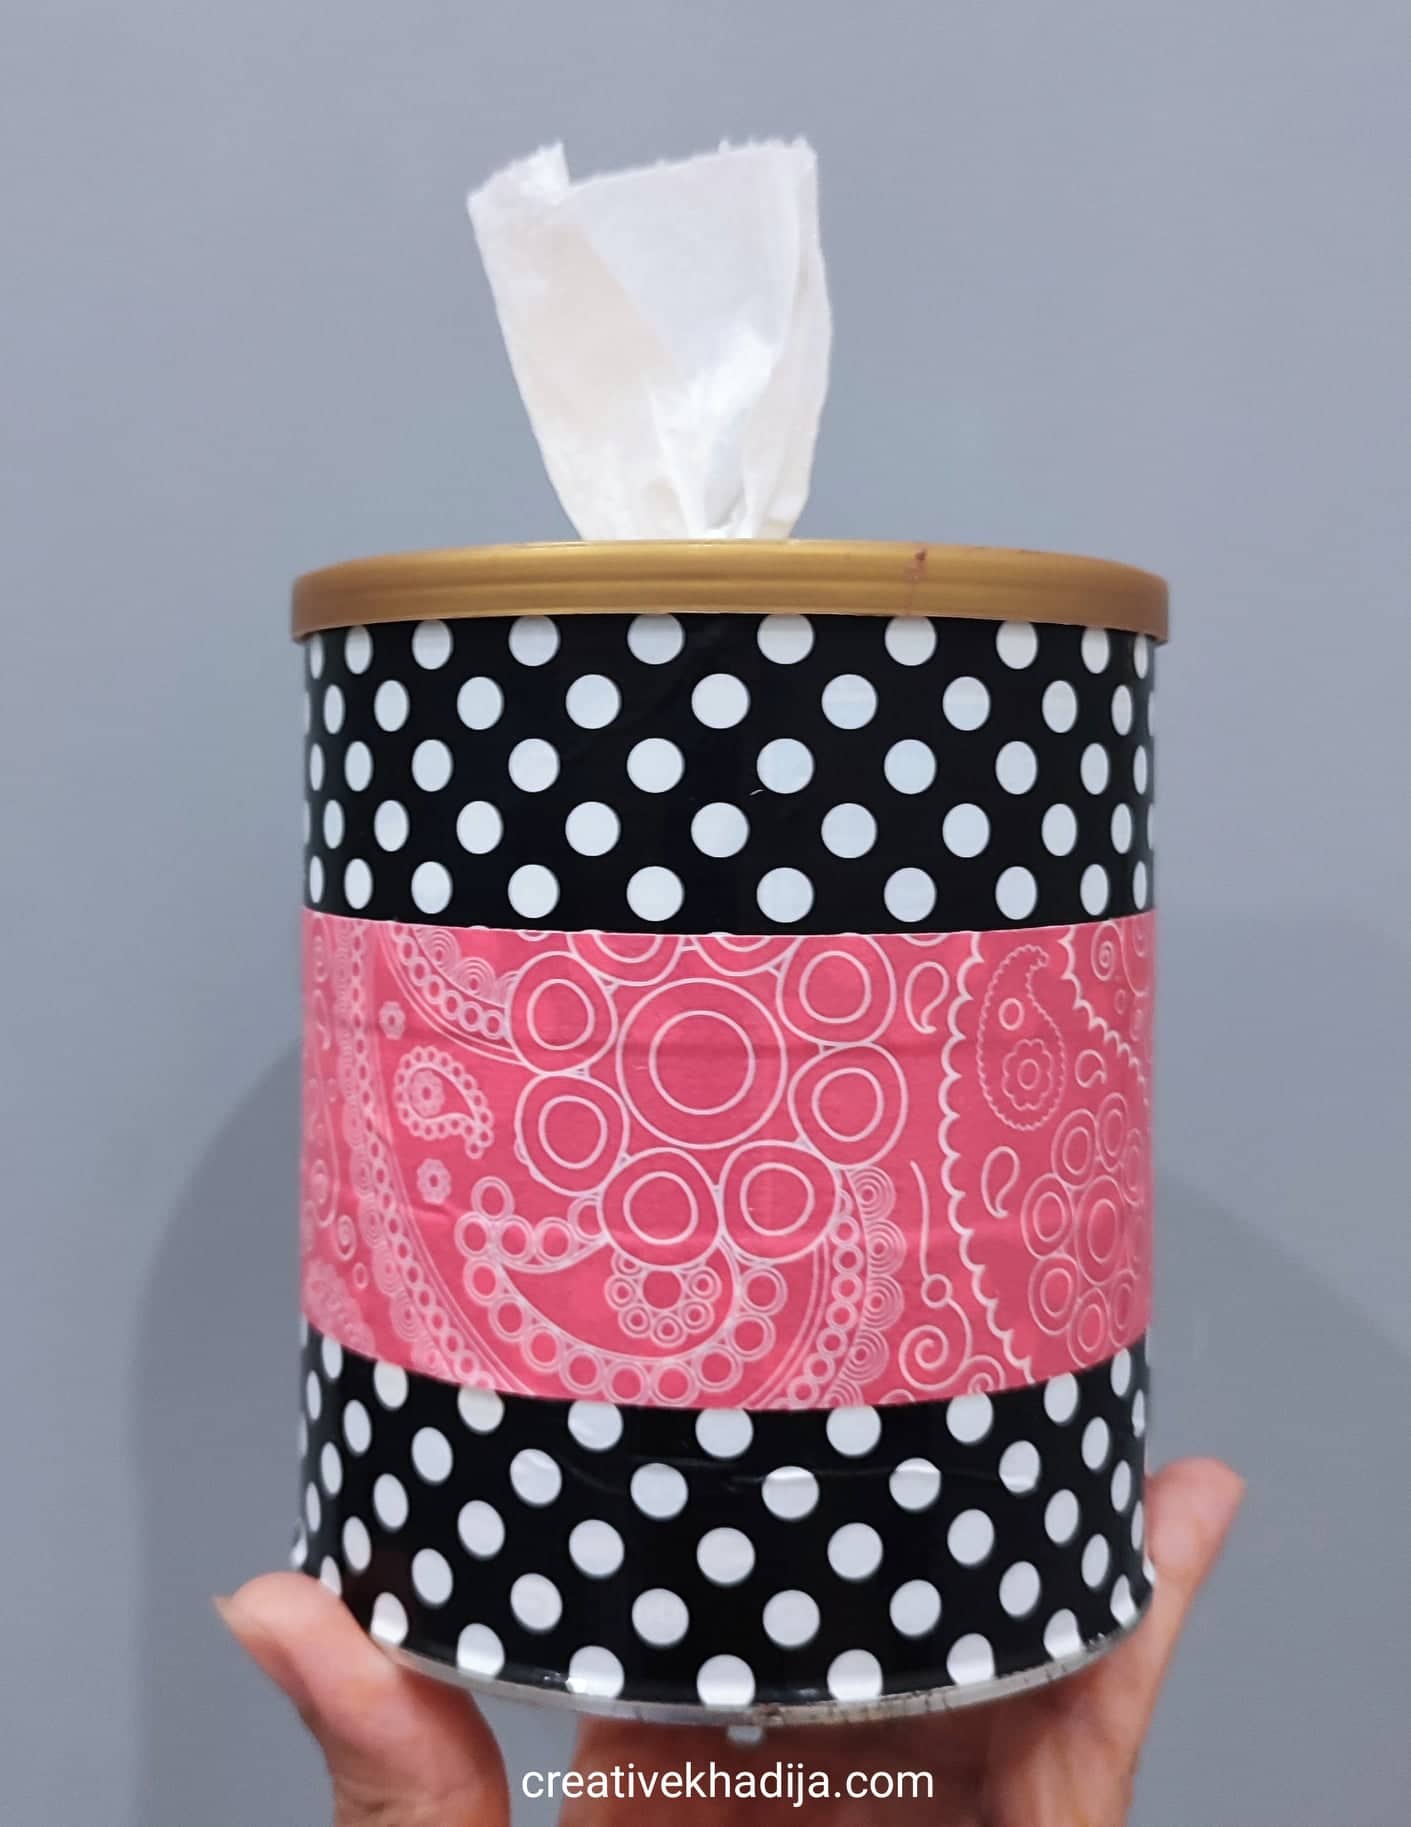 DIY Tissue Paper Roll Holder